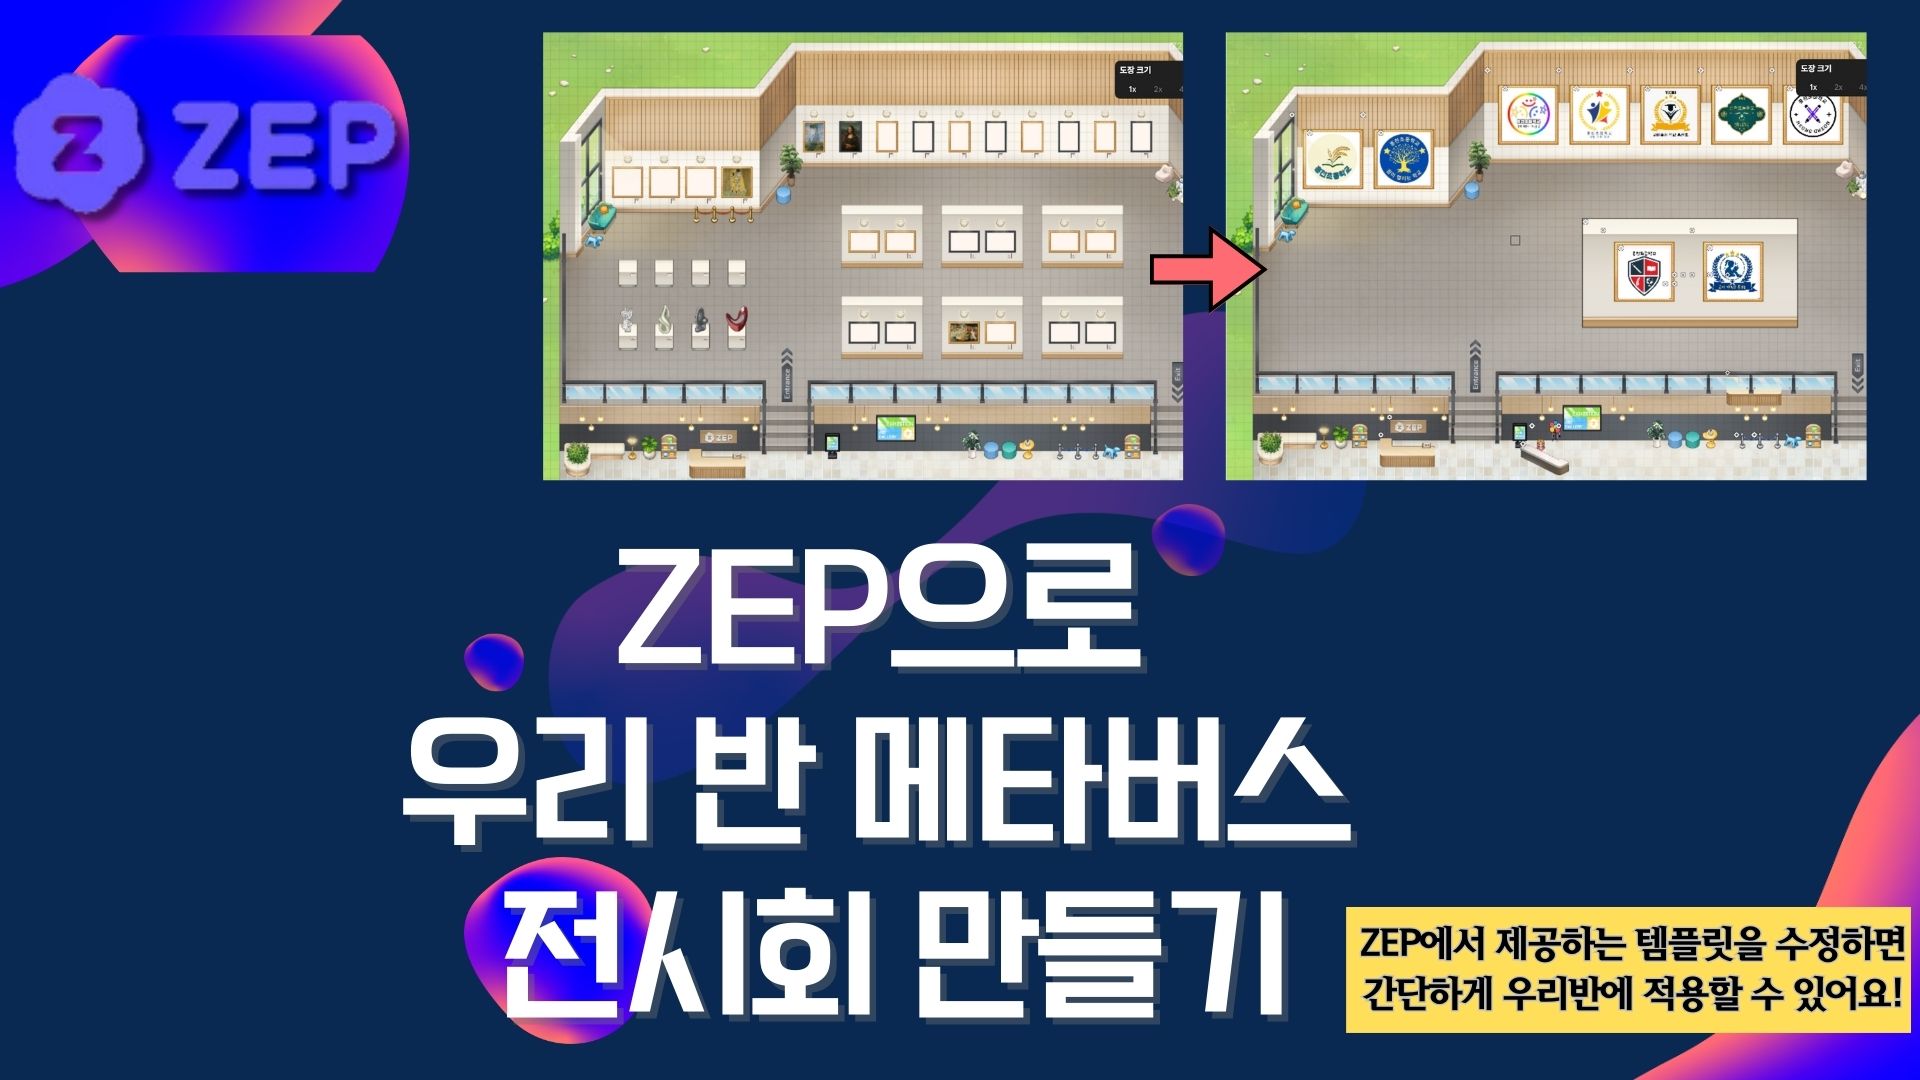 ZEP으로 우리반 메타버스 전시회 만들기 (기본) 2기